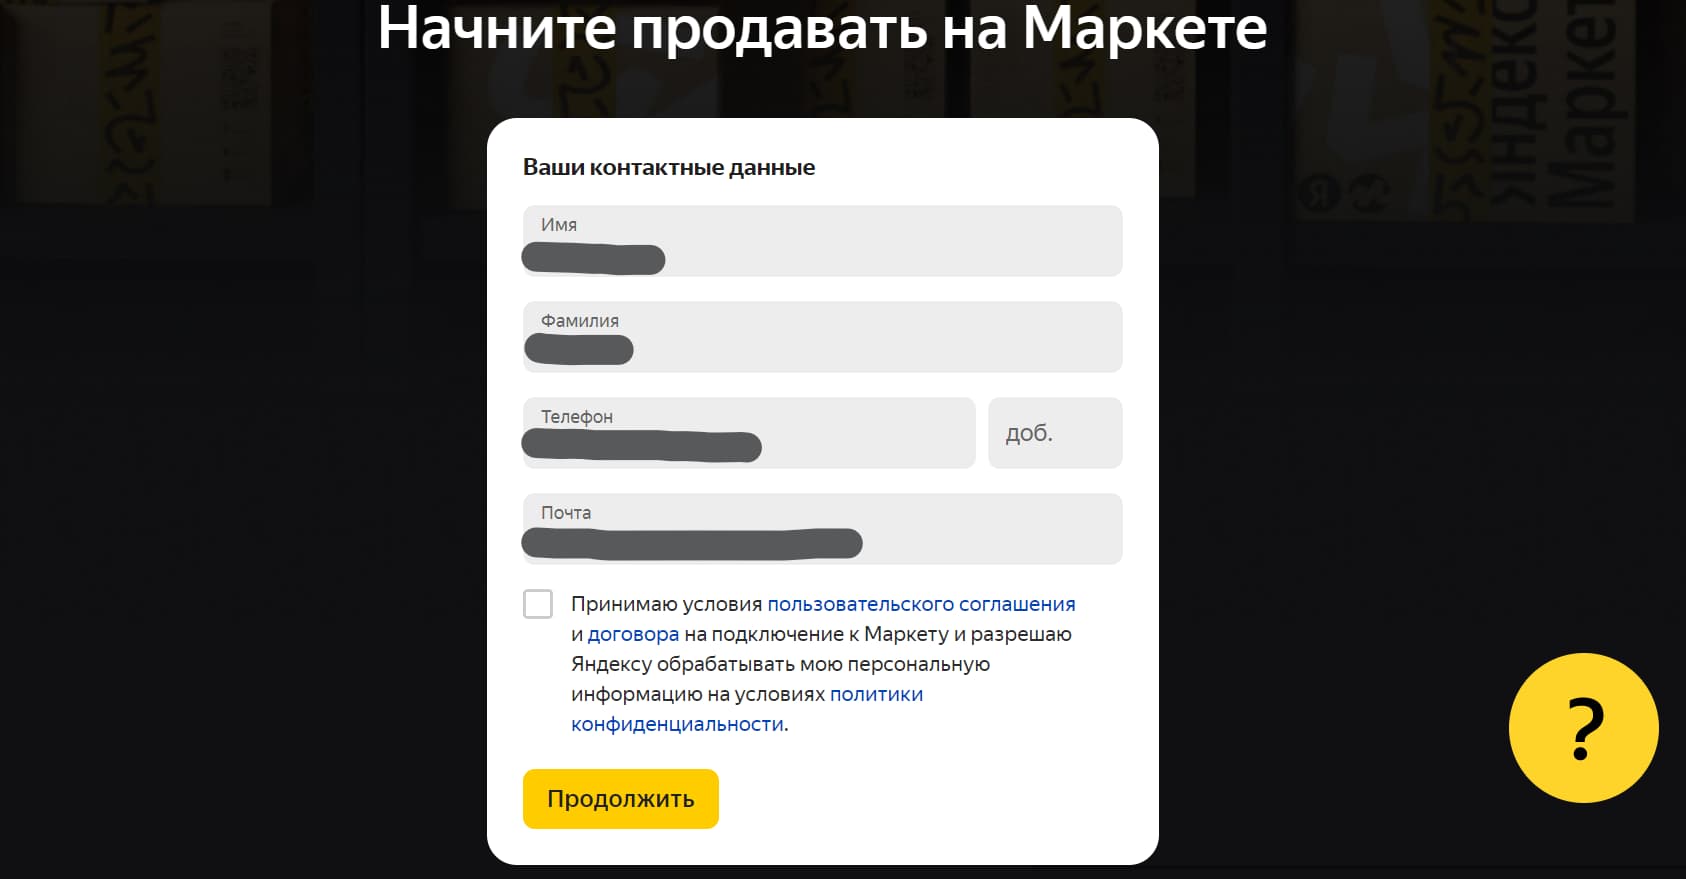 Как зарегистрироваться на Яндекс Маркете шаг 2